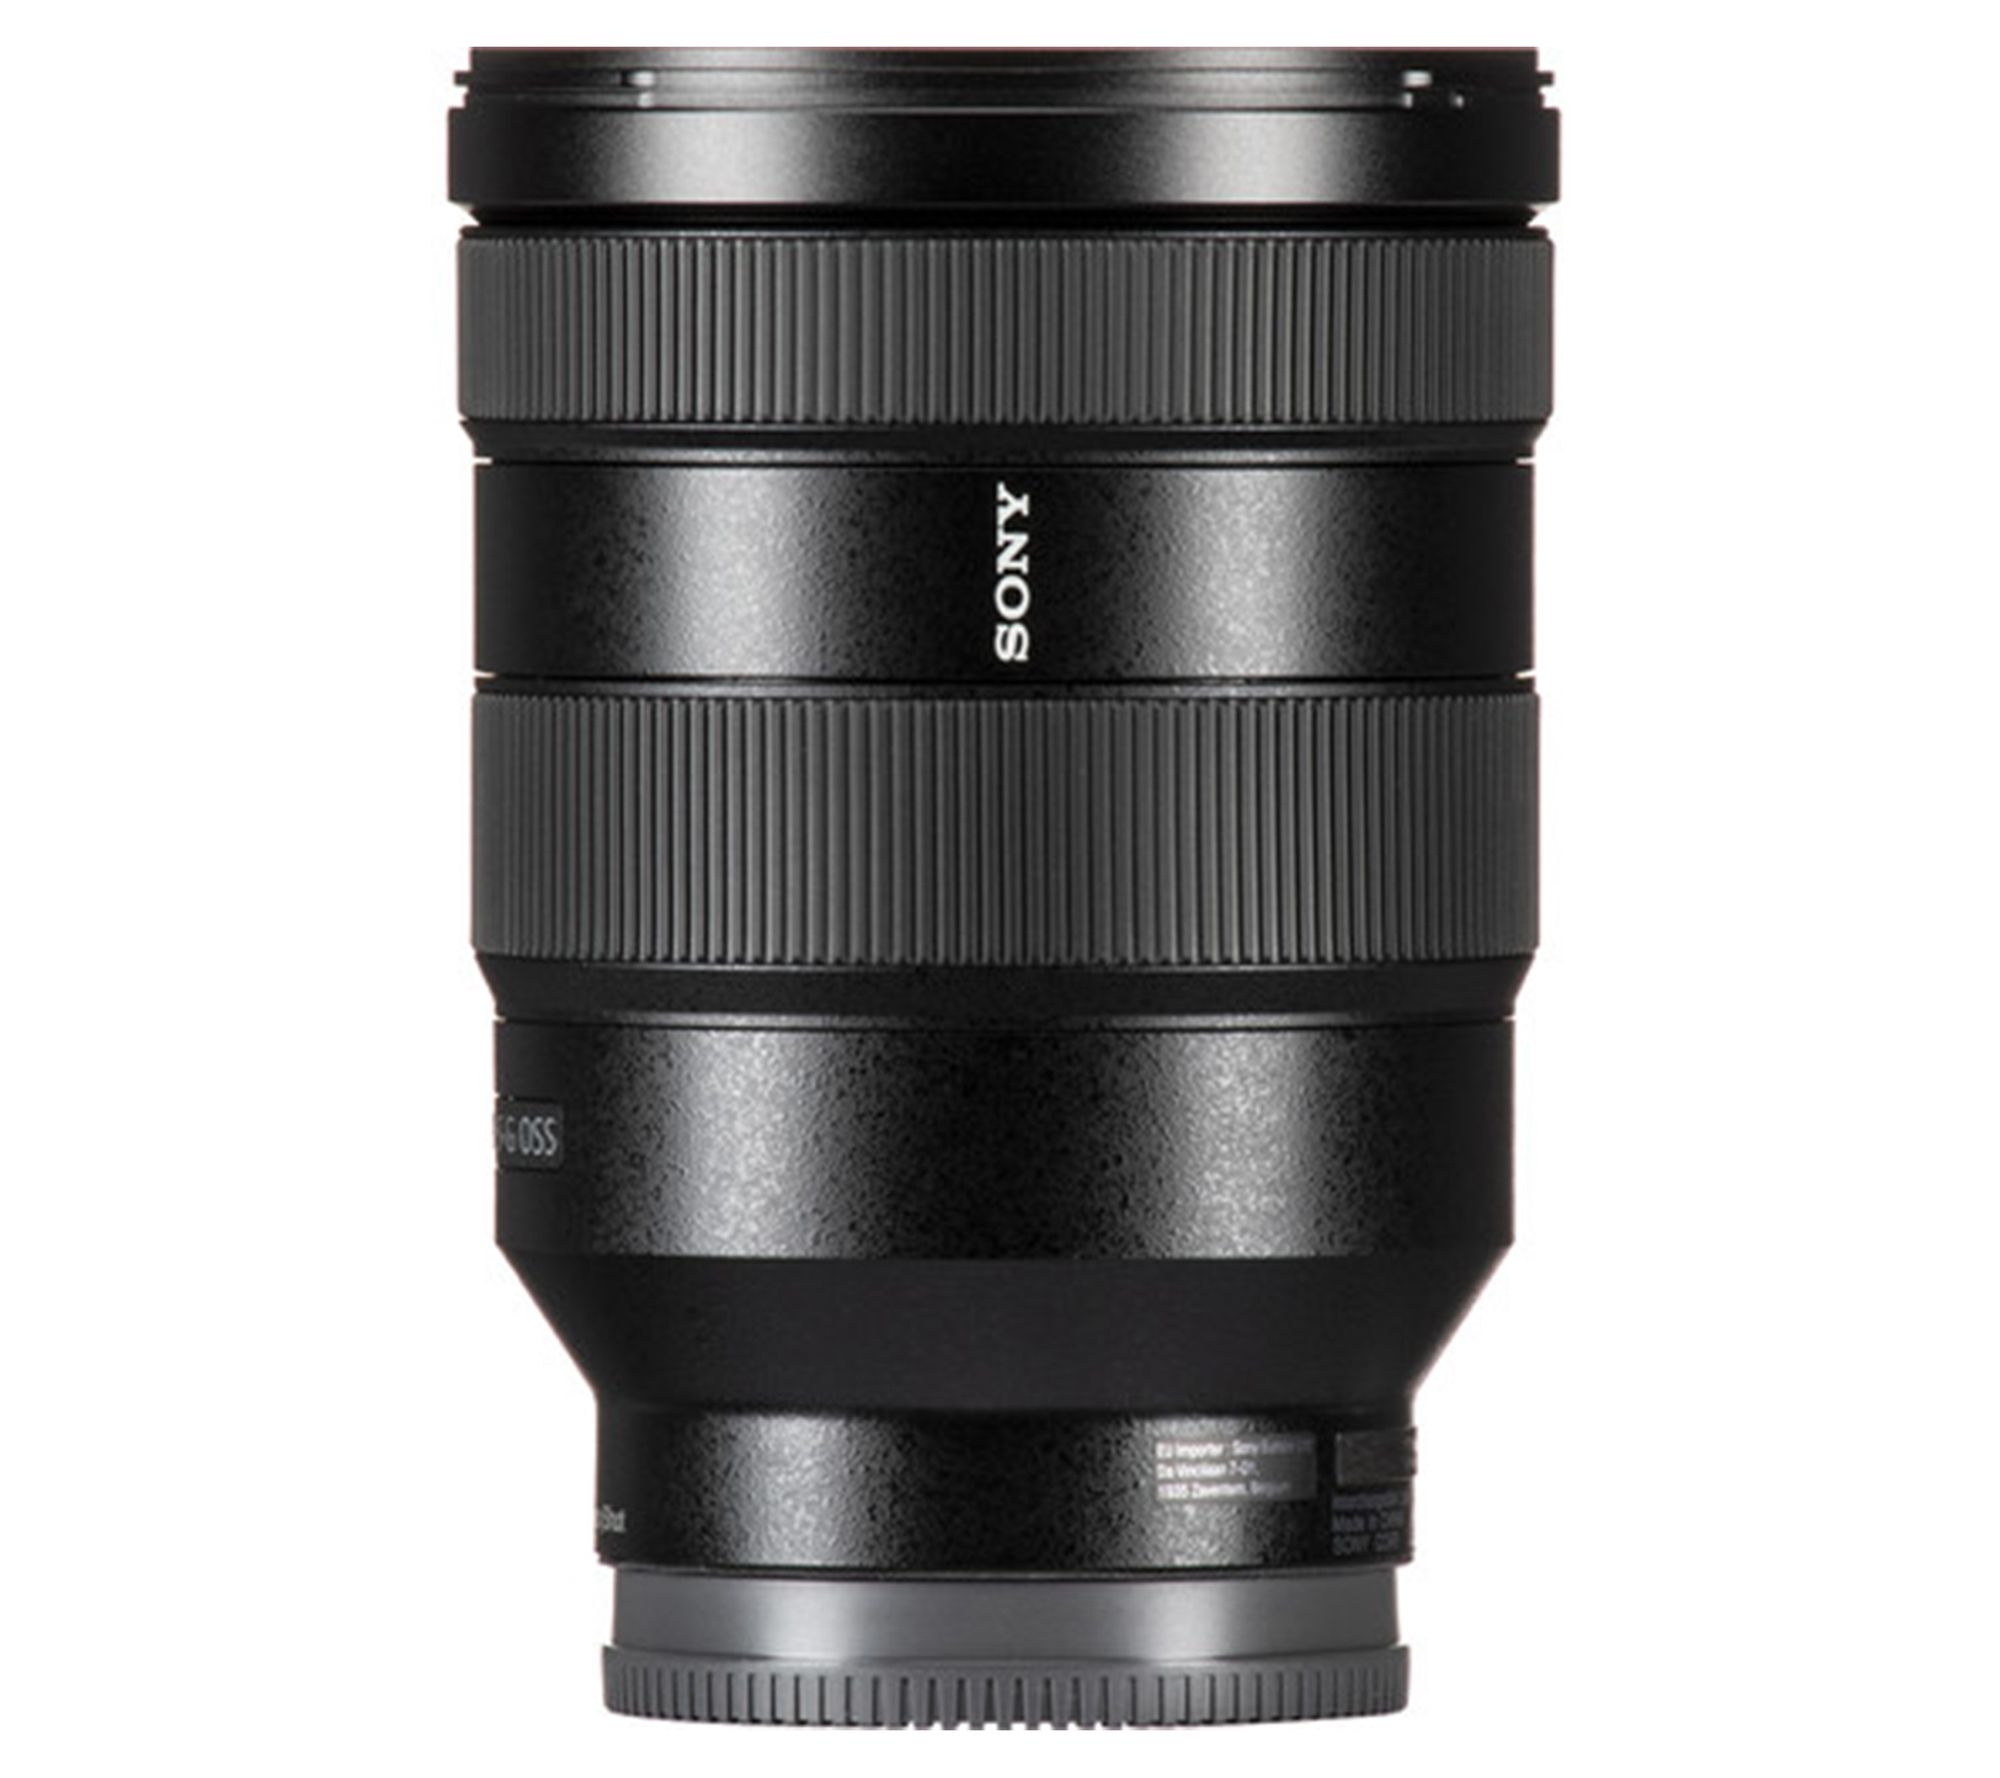 Sony FE 24-105mm f/4 G OSS Lens - QVC.com